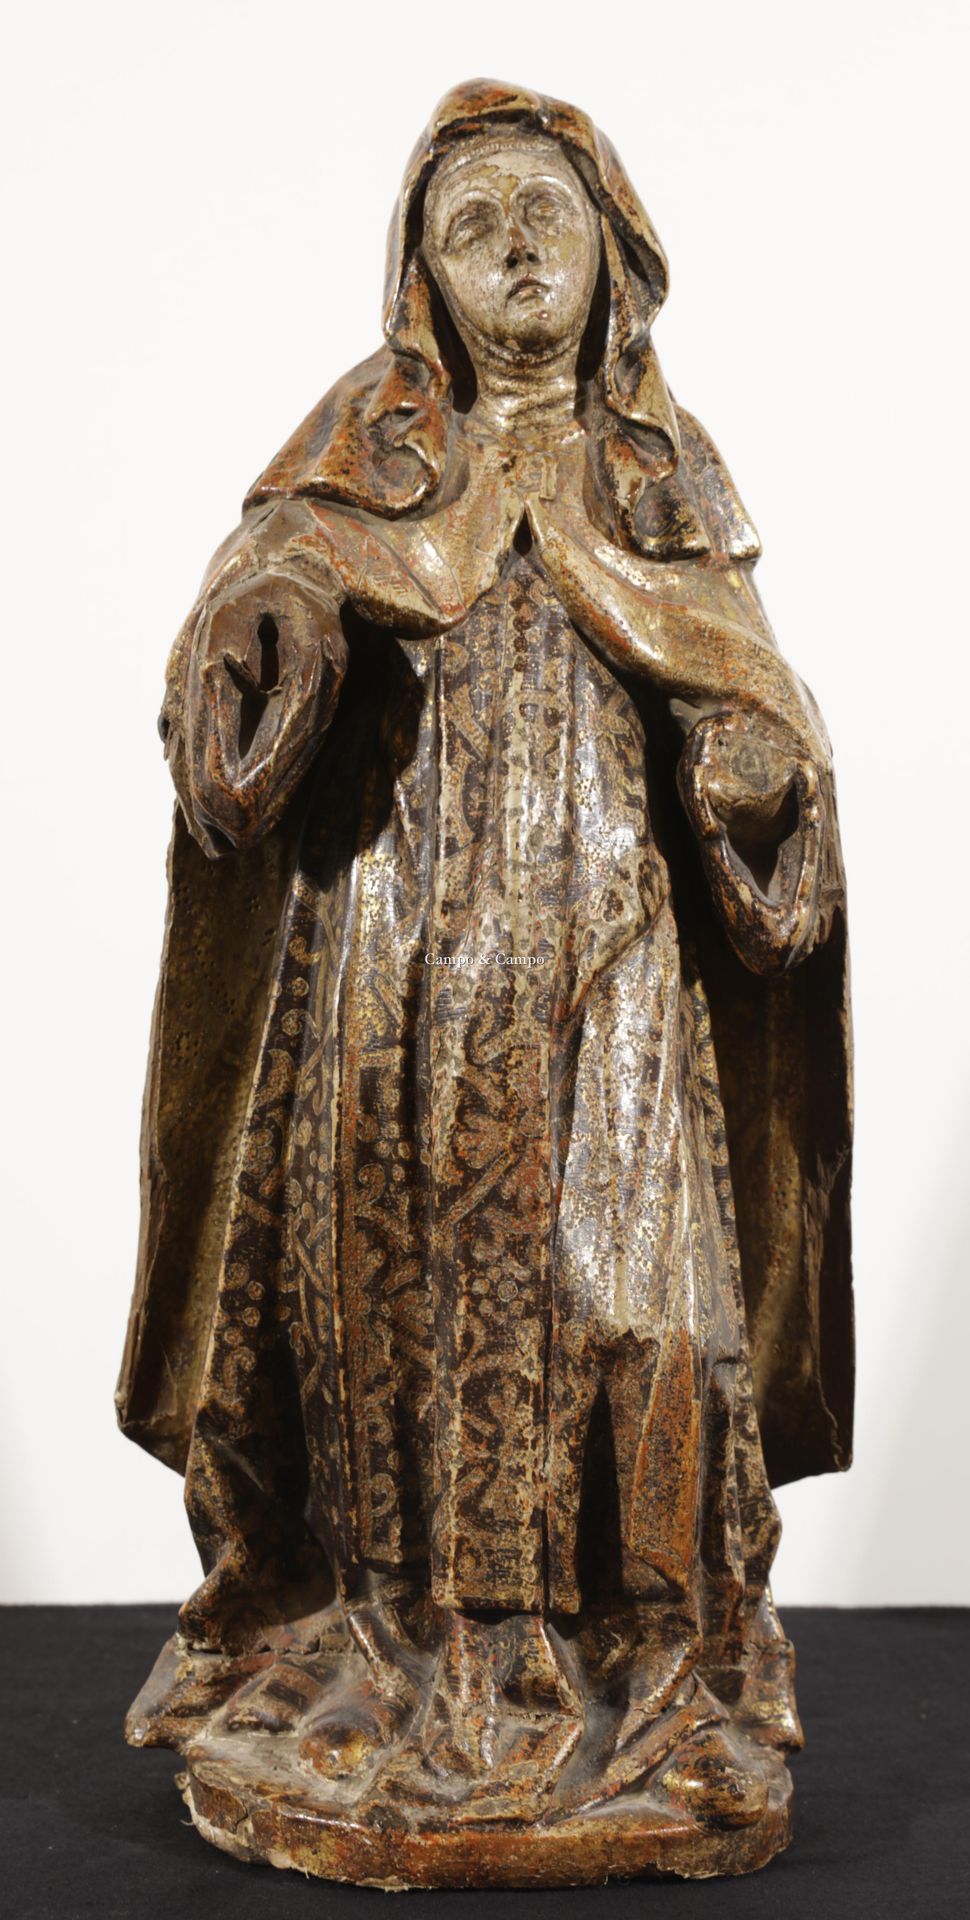 VARIA 1888-1975 圣巴巴拉，多色木雕塑
Heilige Barbara, beeld in polychroom hout
 H= 47 cm